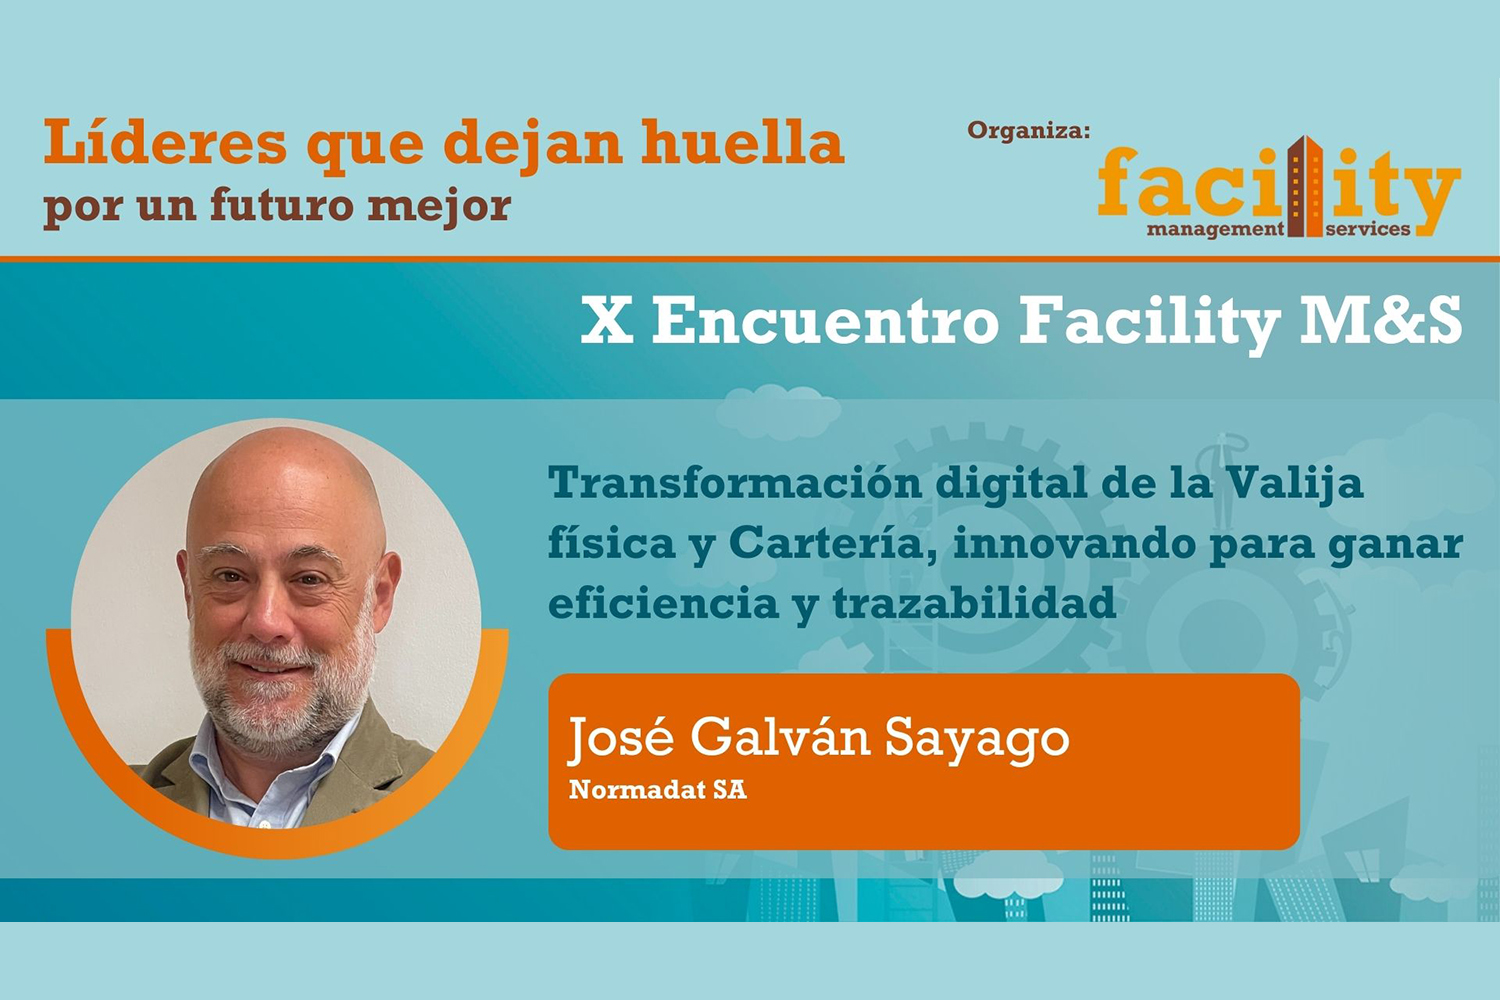 José Galván Sayago (Normadat SA): transformación digital de la valija física y cartería, innovando para ganar eficiencia y trazabilidad